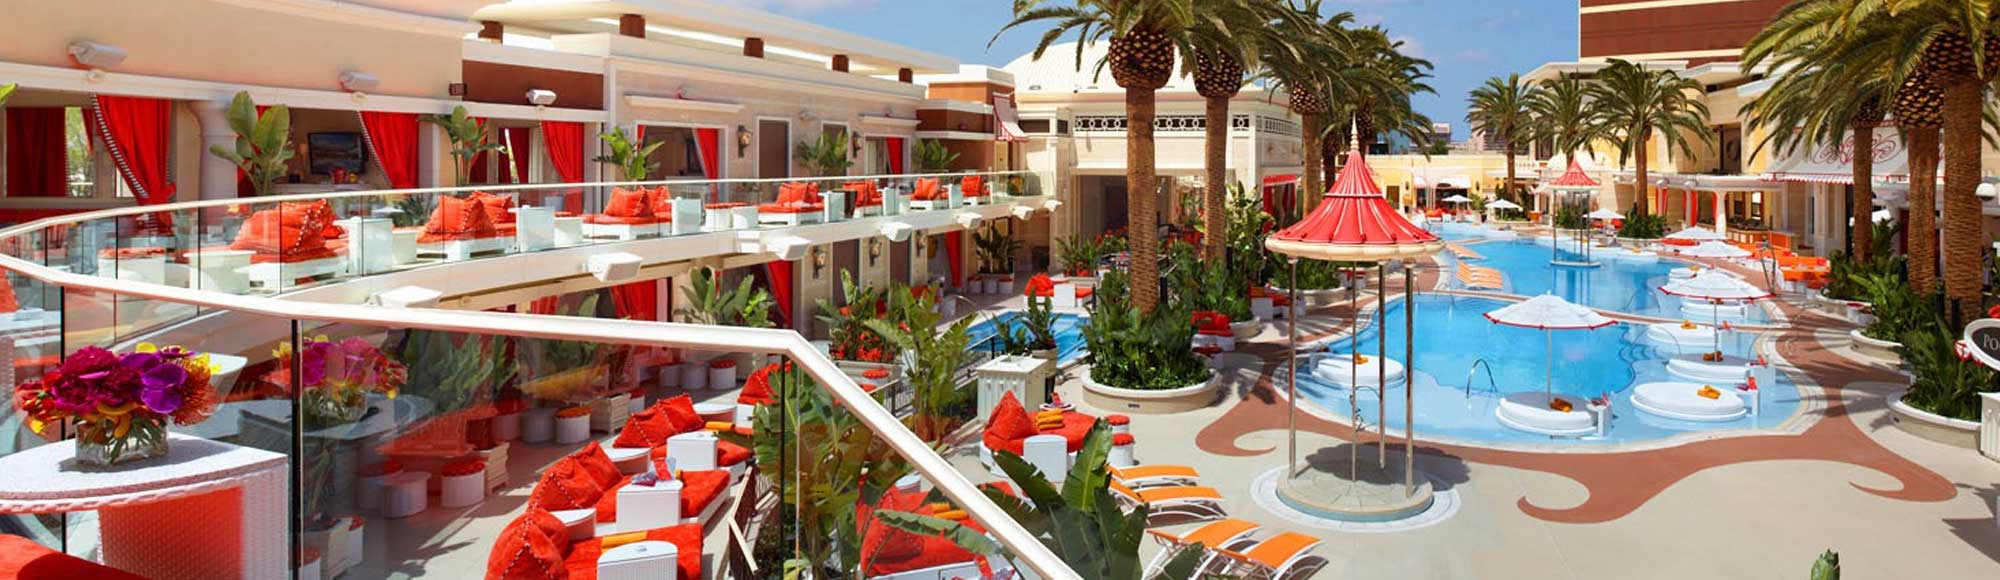 Encore Beach Club – Destino:Las Vegas